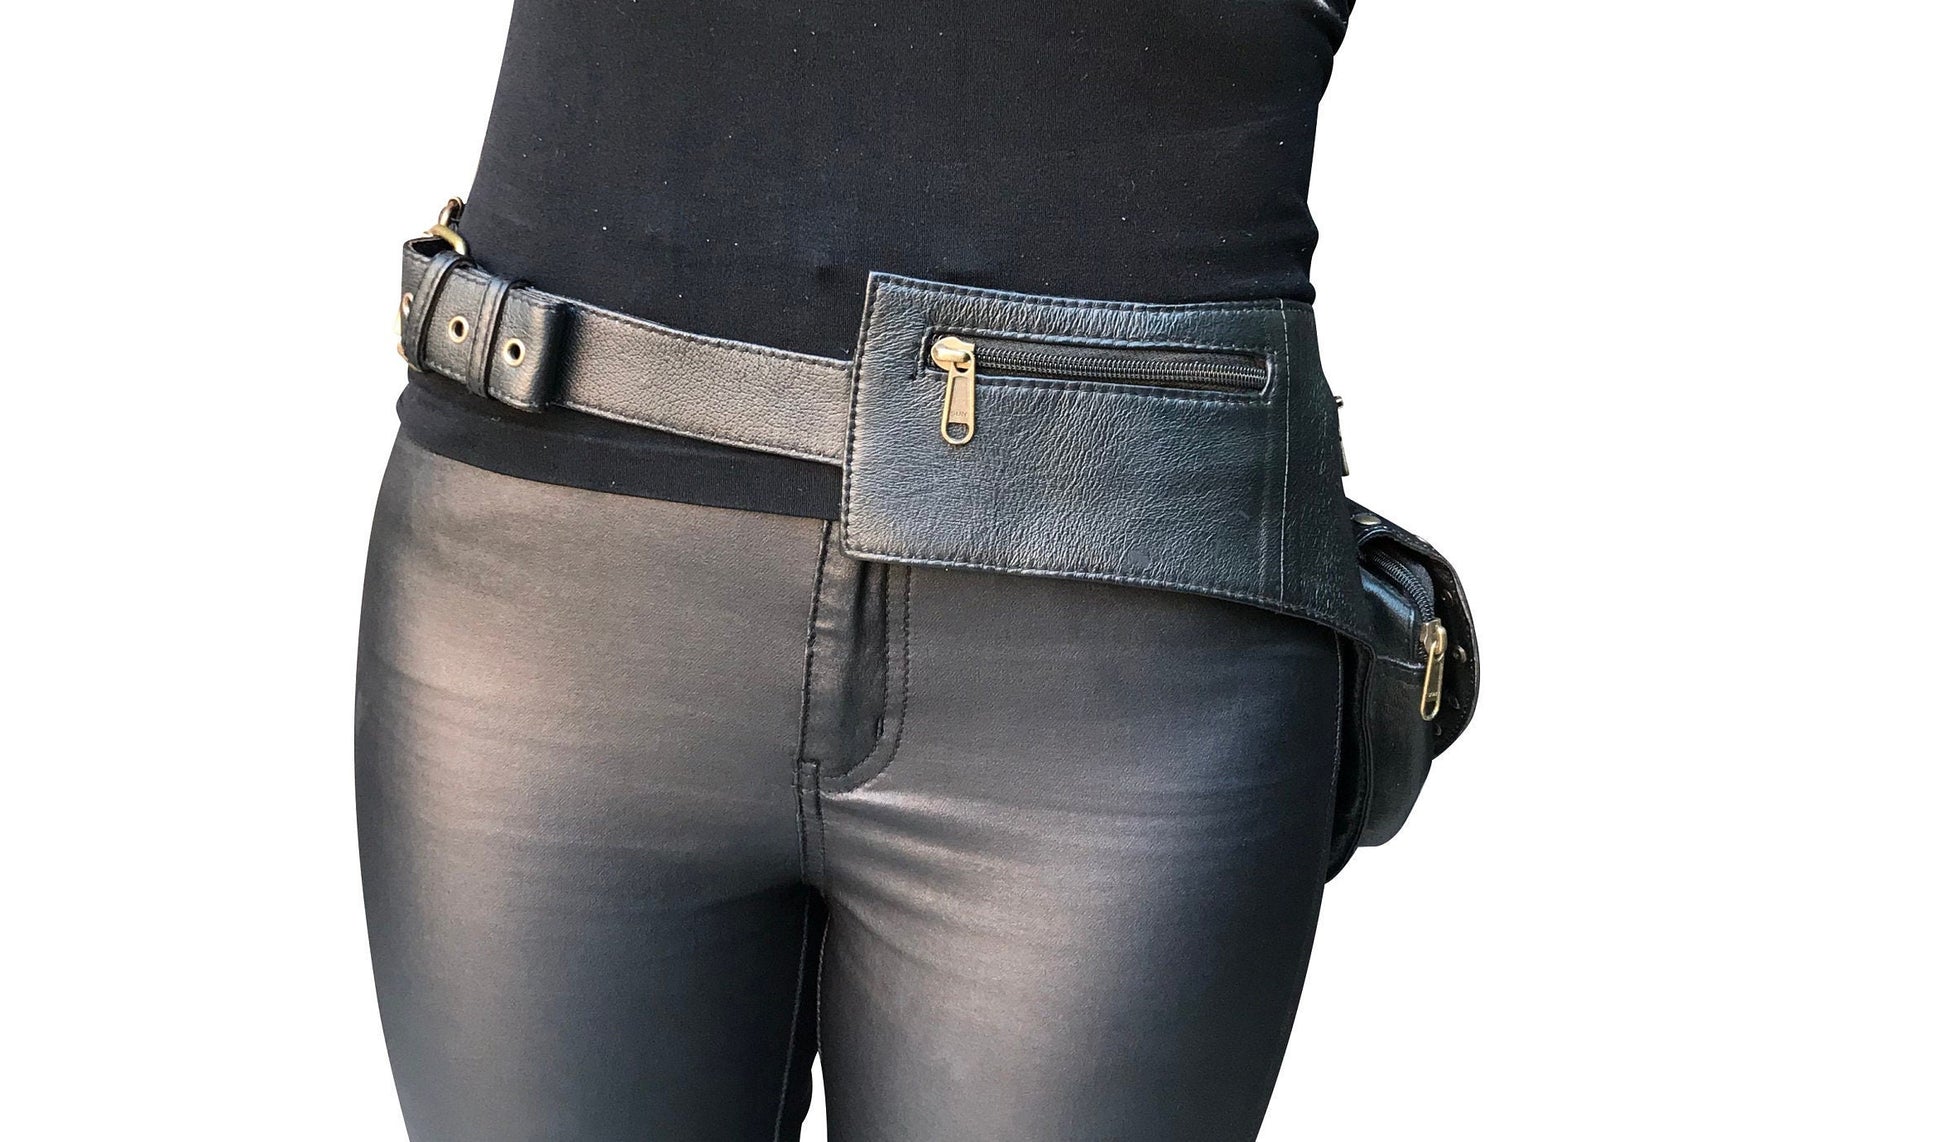 Genuine Leather Utility Belt Belt With Pockets Men's 